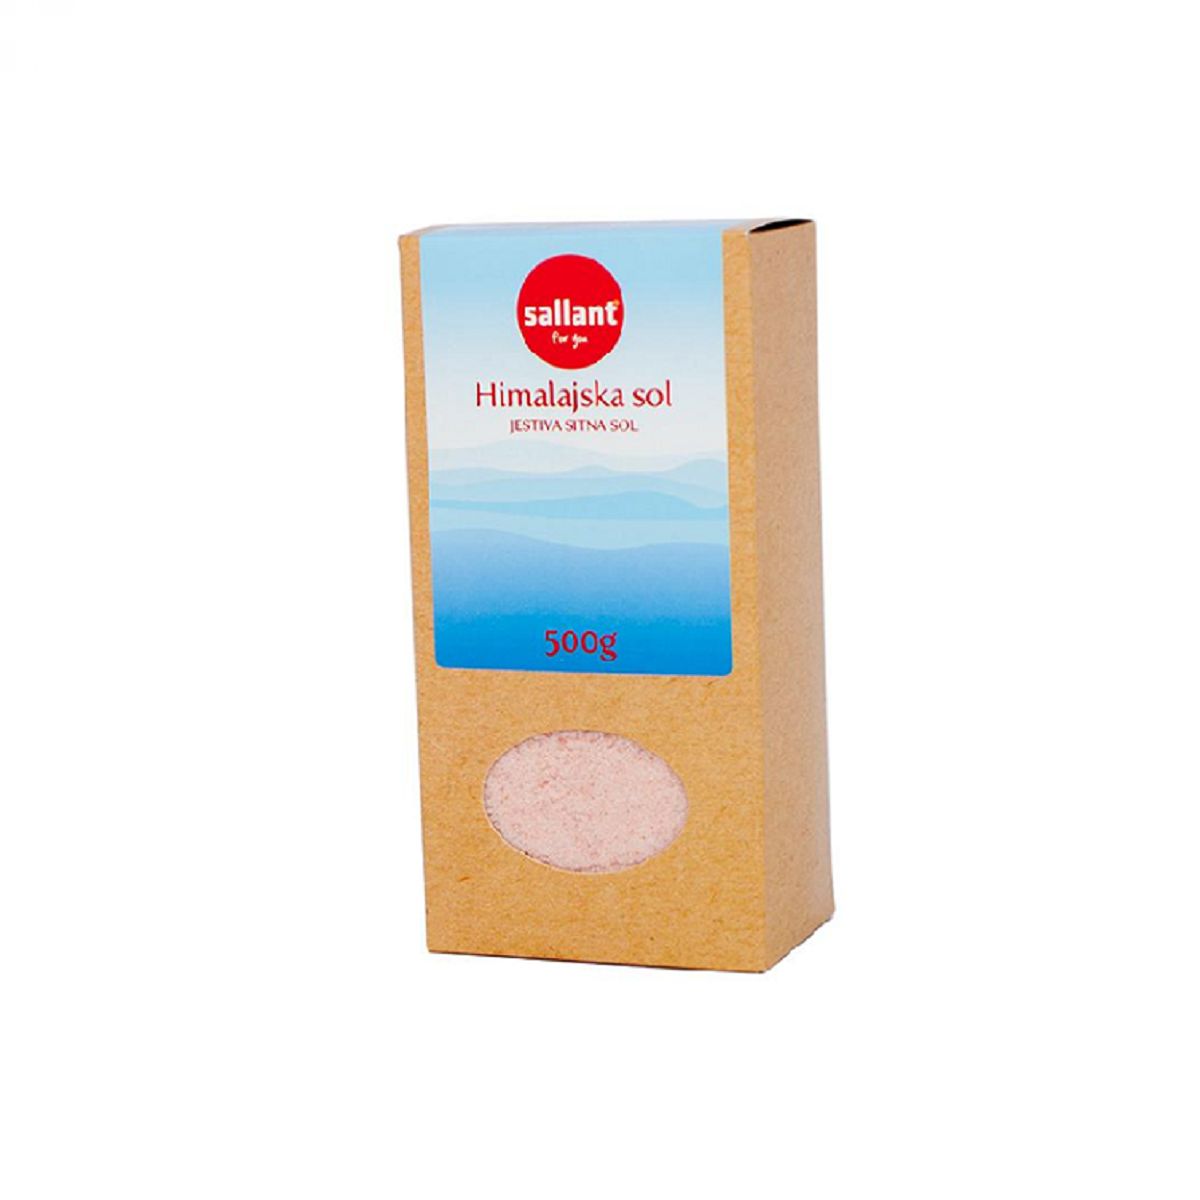 Himalajska sol Sallant - drobno mleta jedilna sol, 500 g